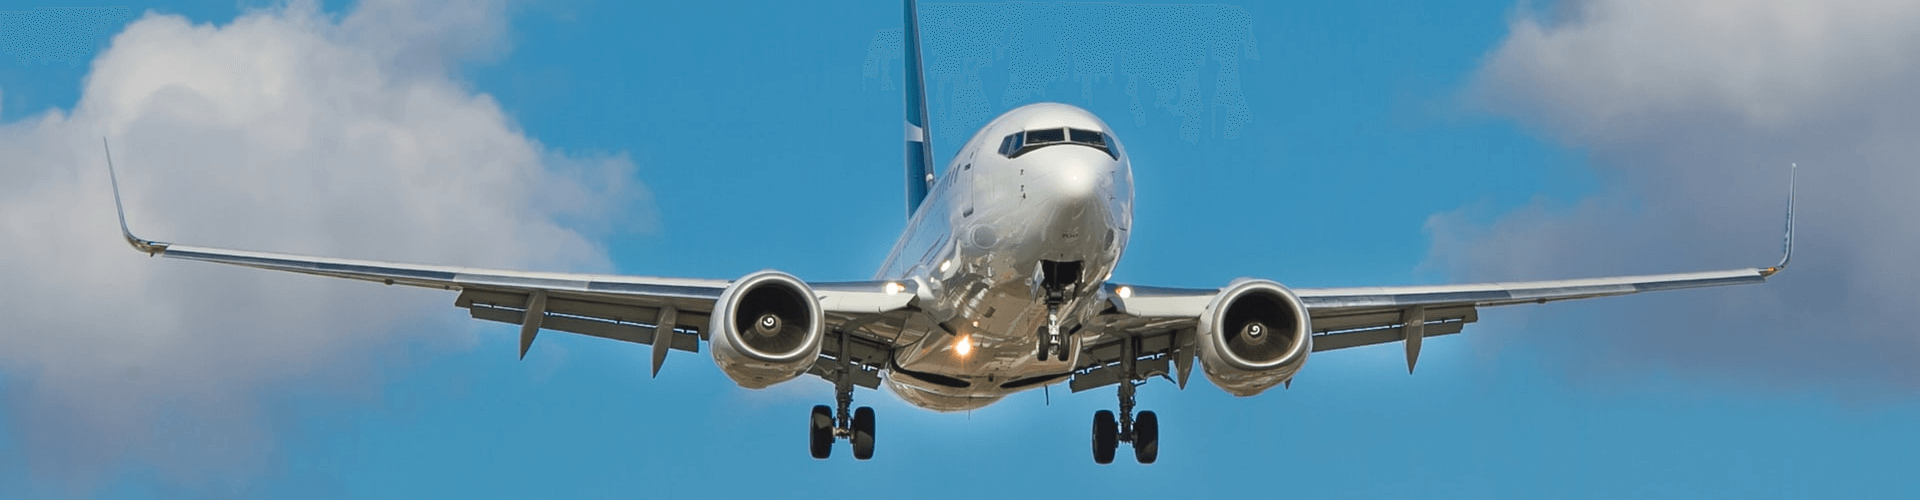 Smartengeld bedragen vlucht Germanwings | LetselPro